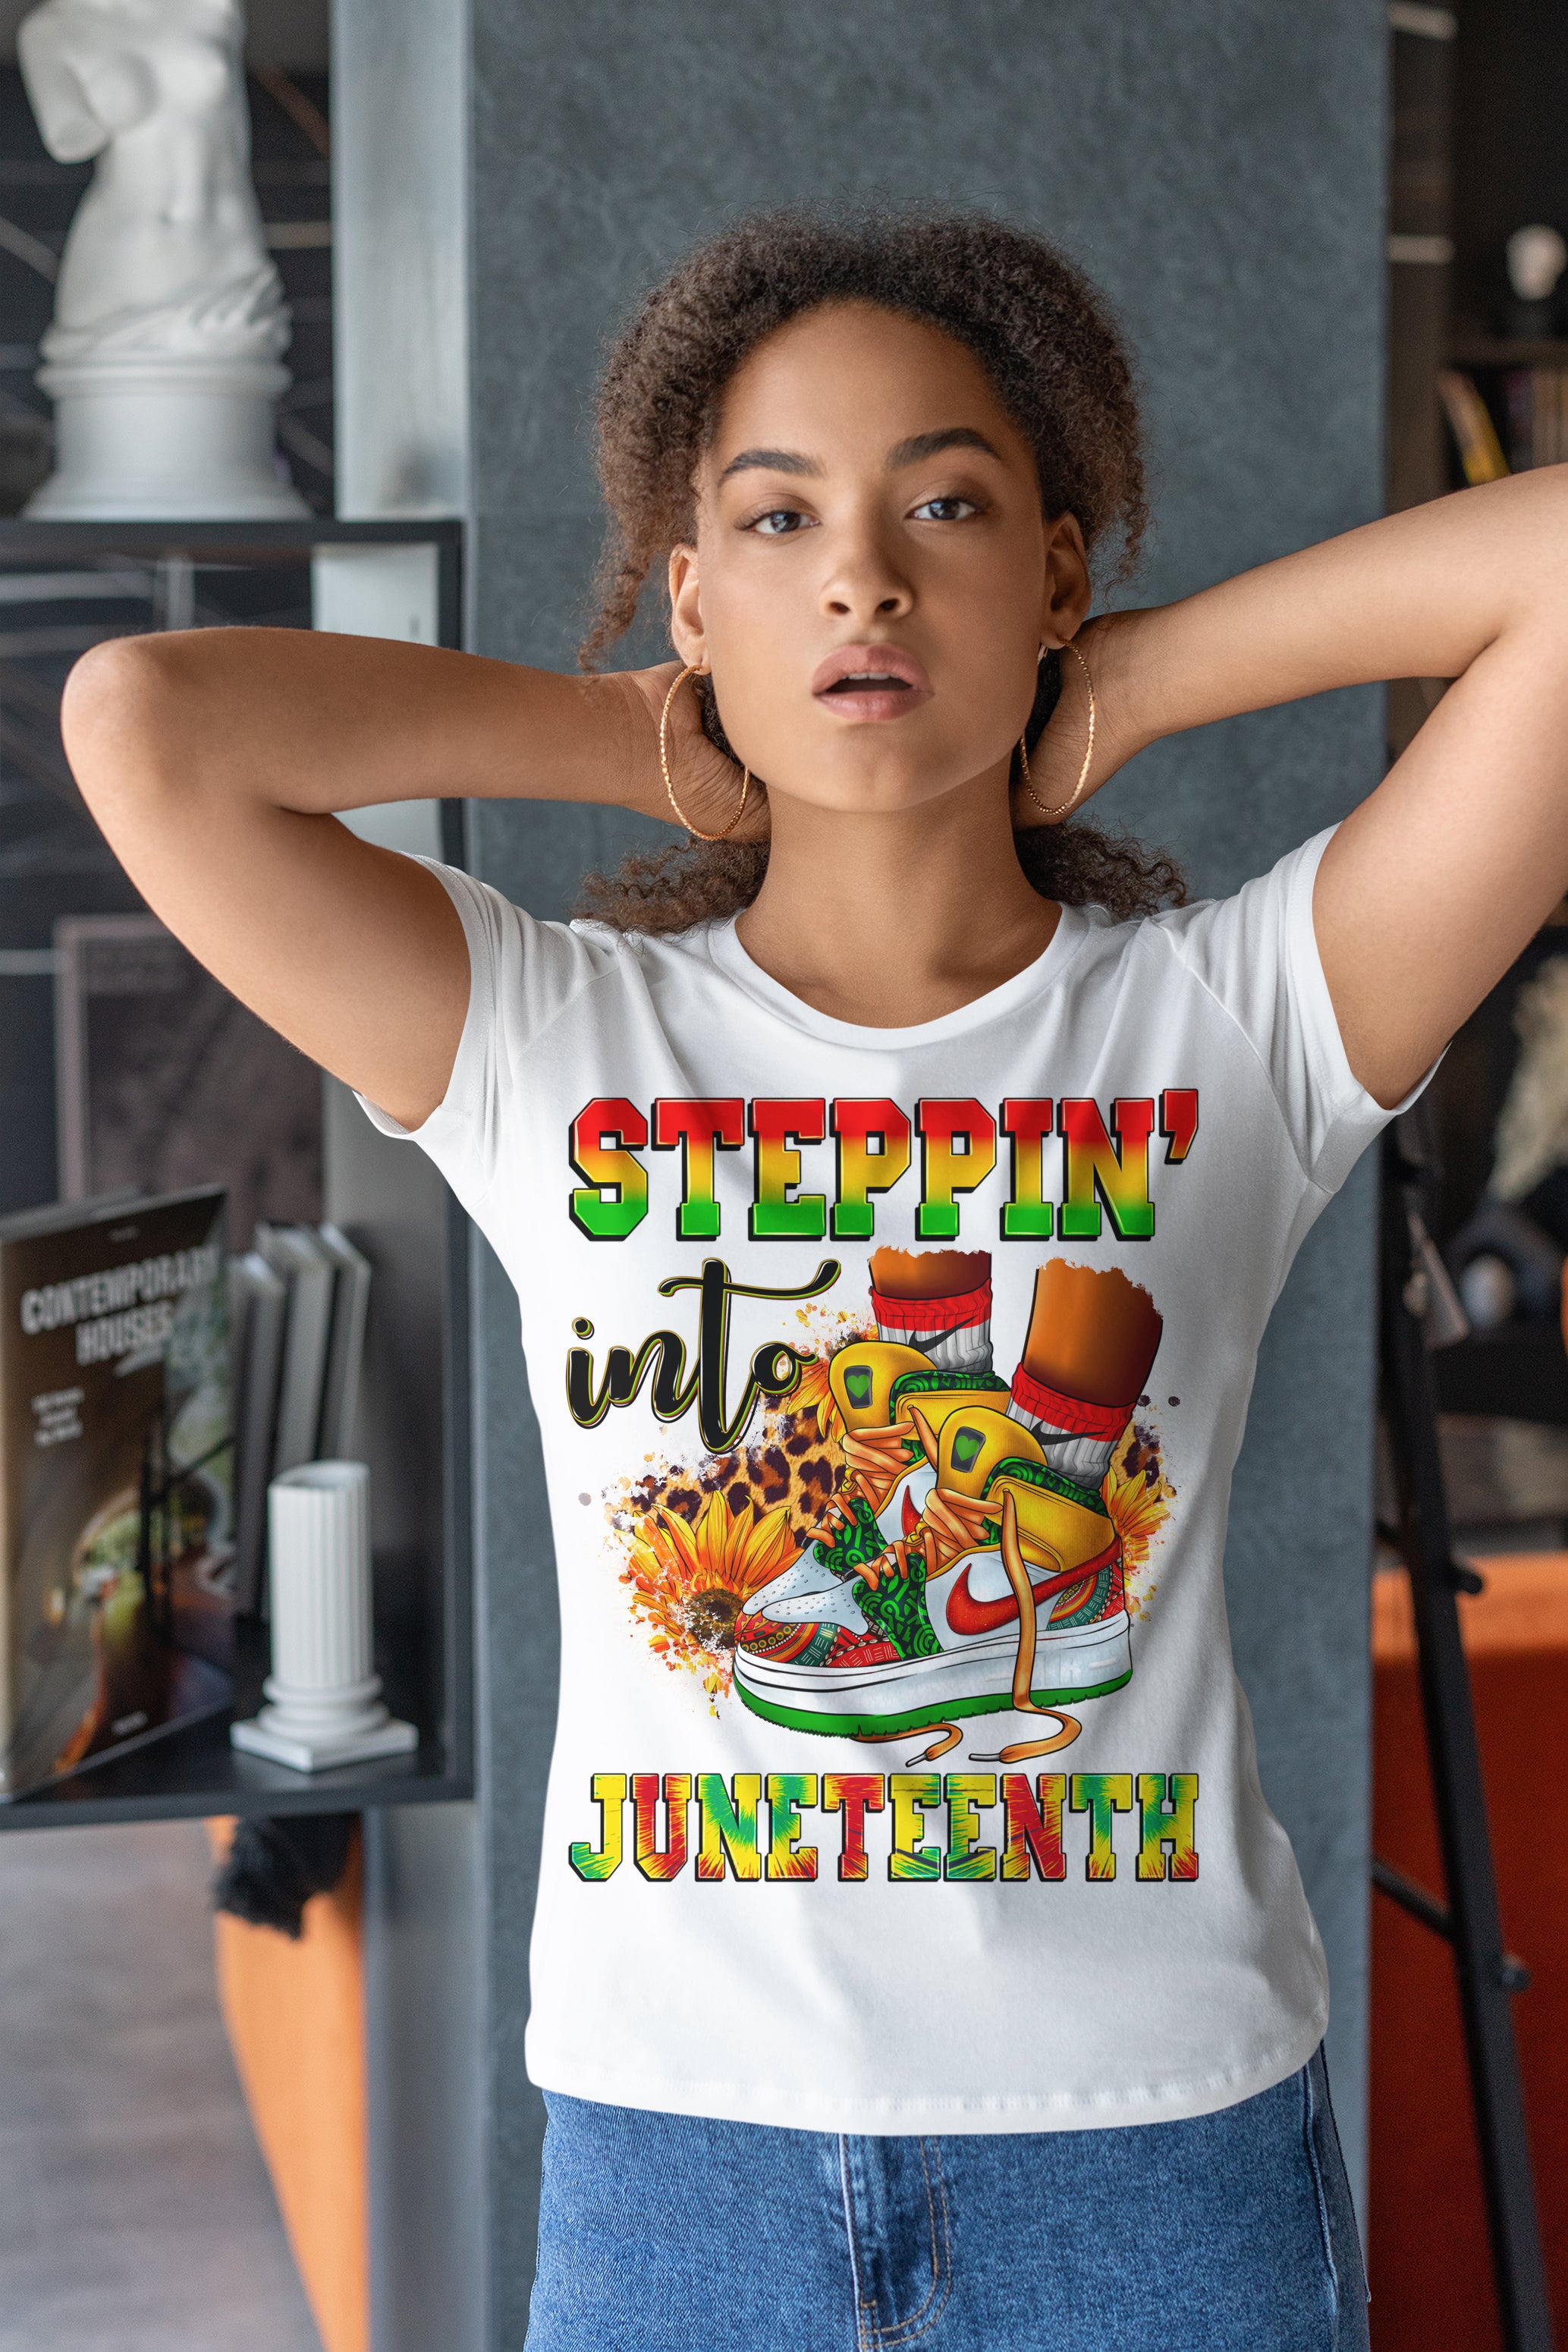 Sale: Steppin’ into Juneteenth Sneak T-Shirt